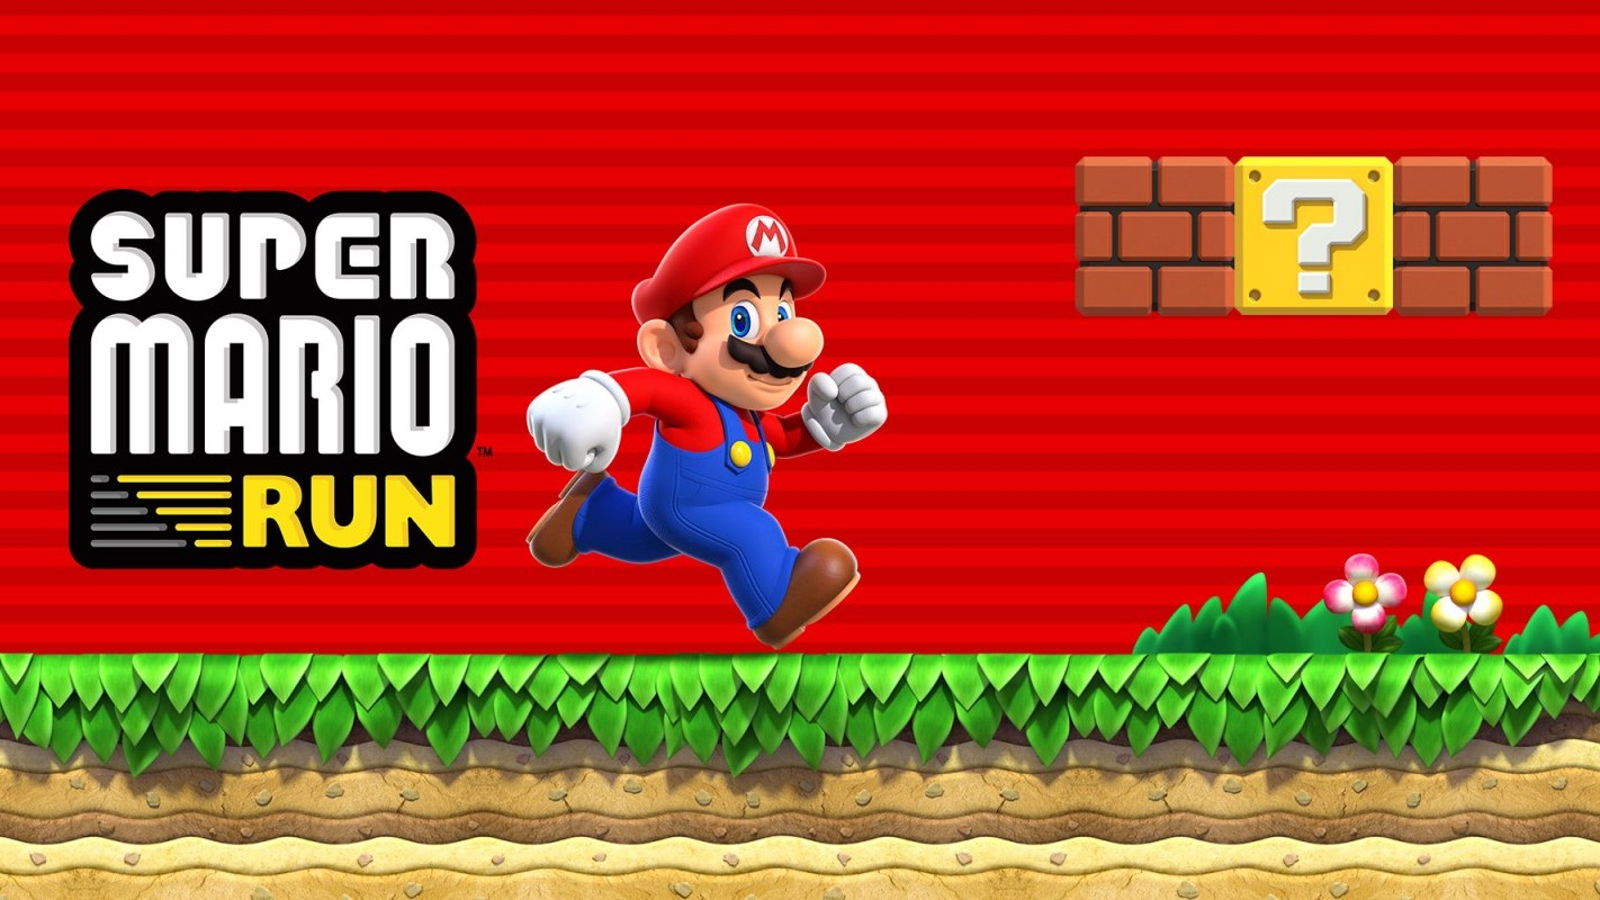 Mario Video Game Inventor Shigeru Miyamoto on Design - COOL